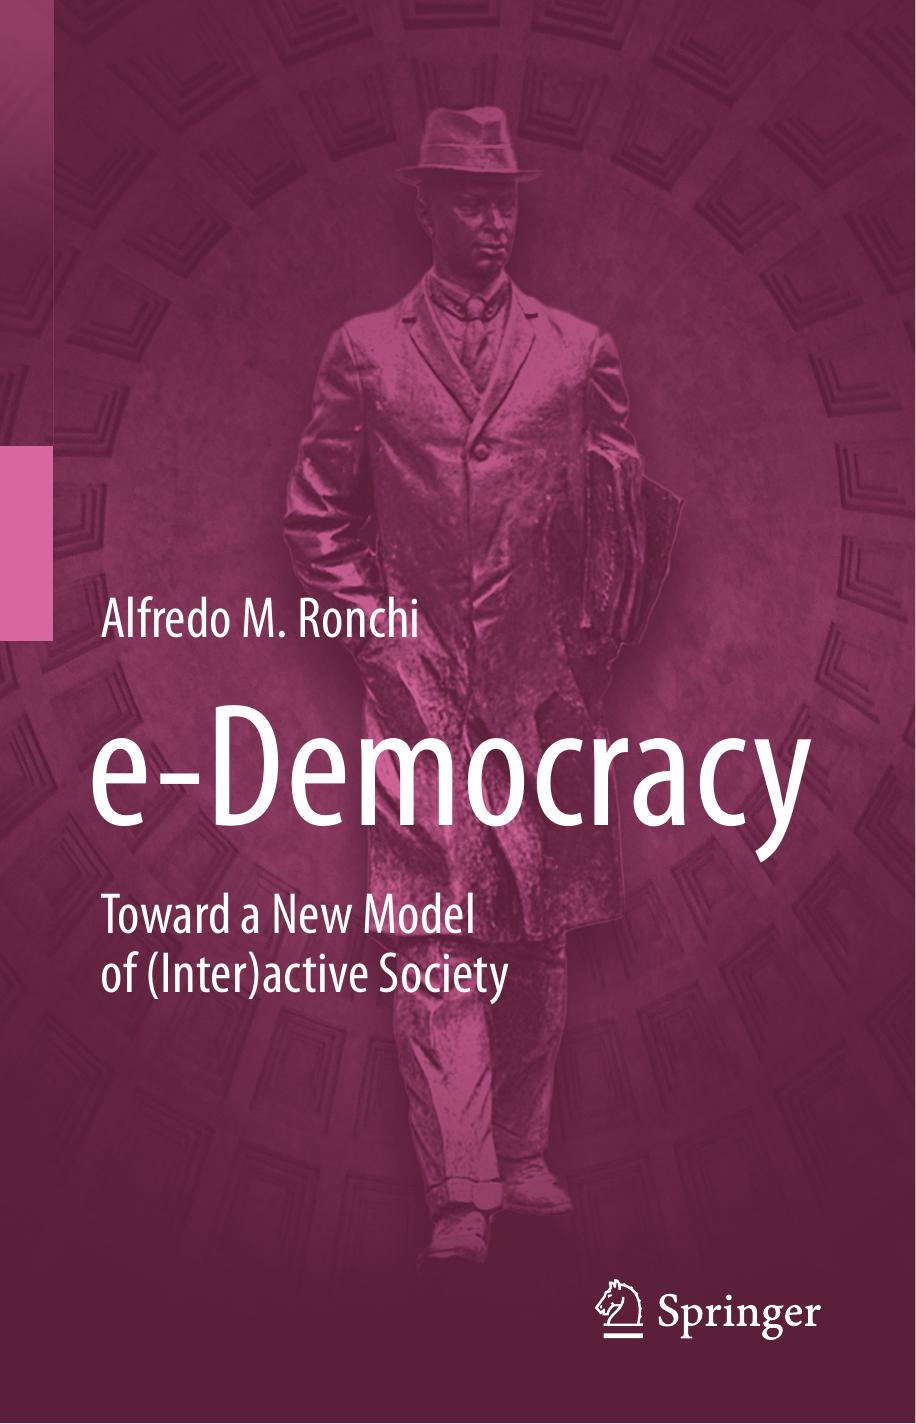 e-Democracy Toward a New Model of (Inter)active Society 2019